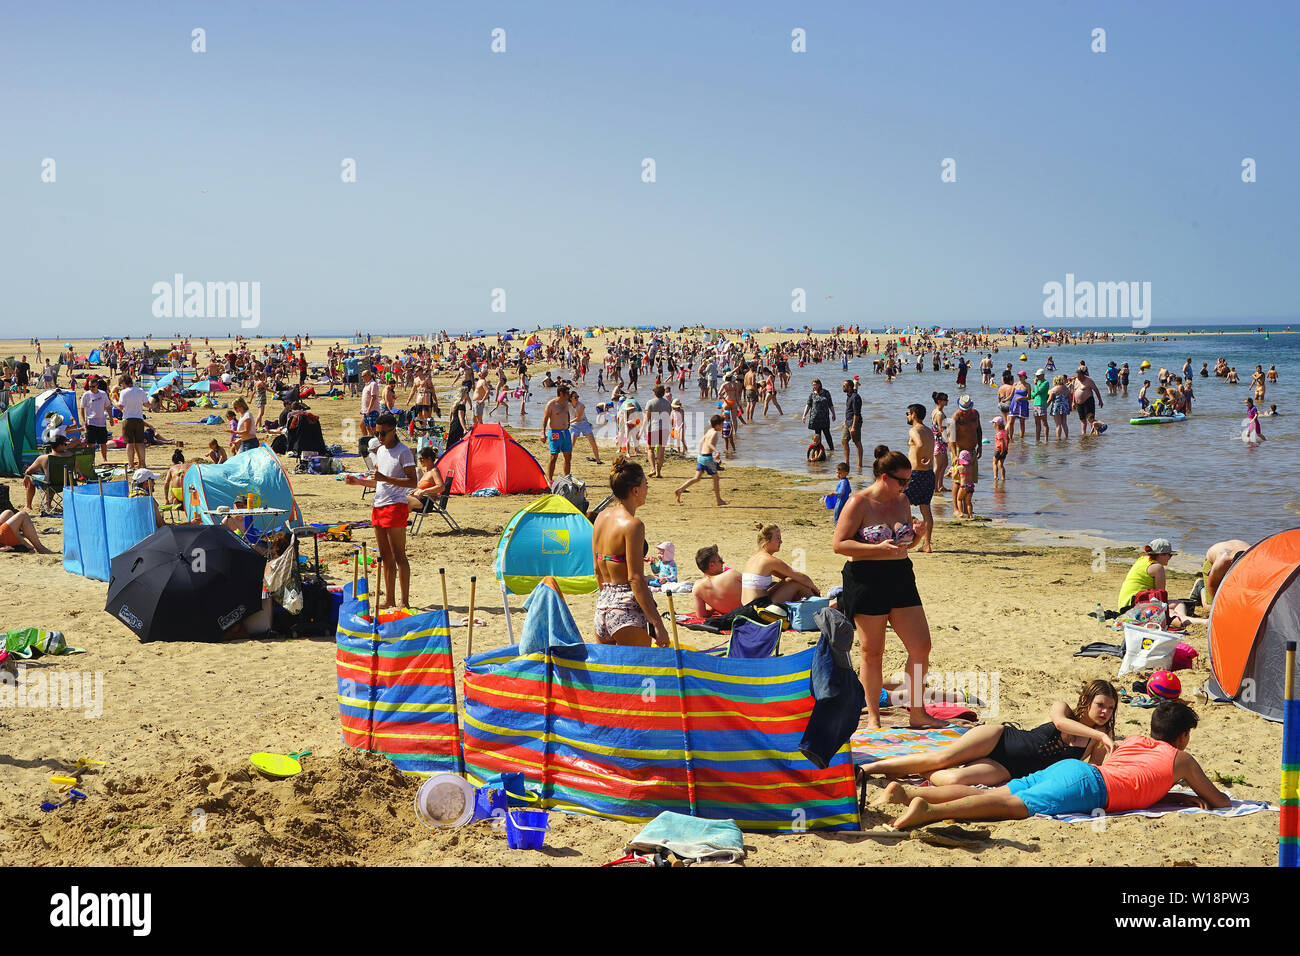 Las multitudes en la playa en pozos junto al mar Foto de stock